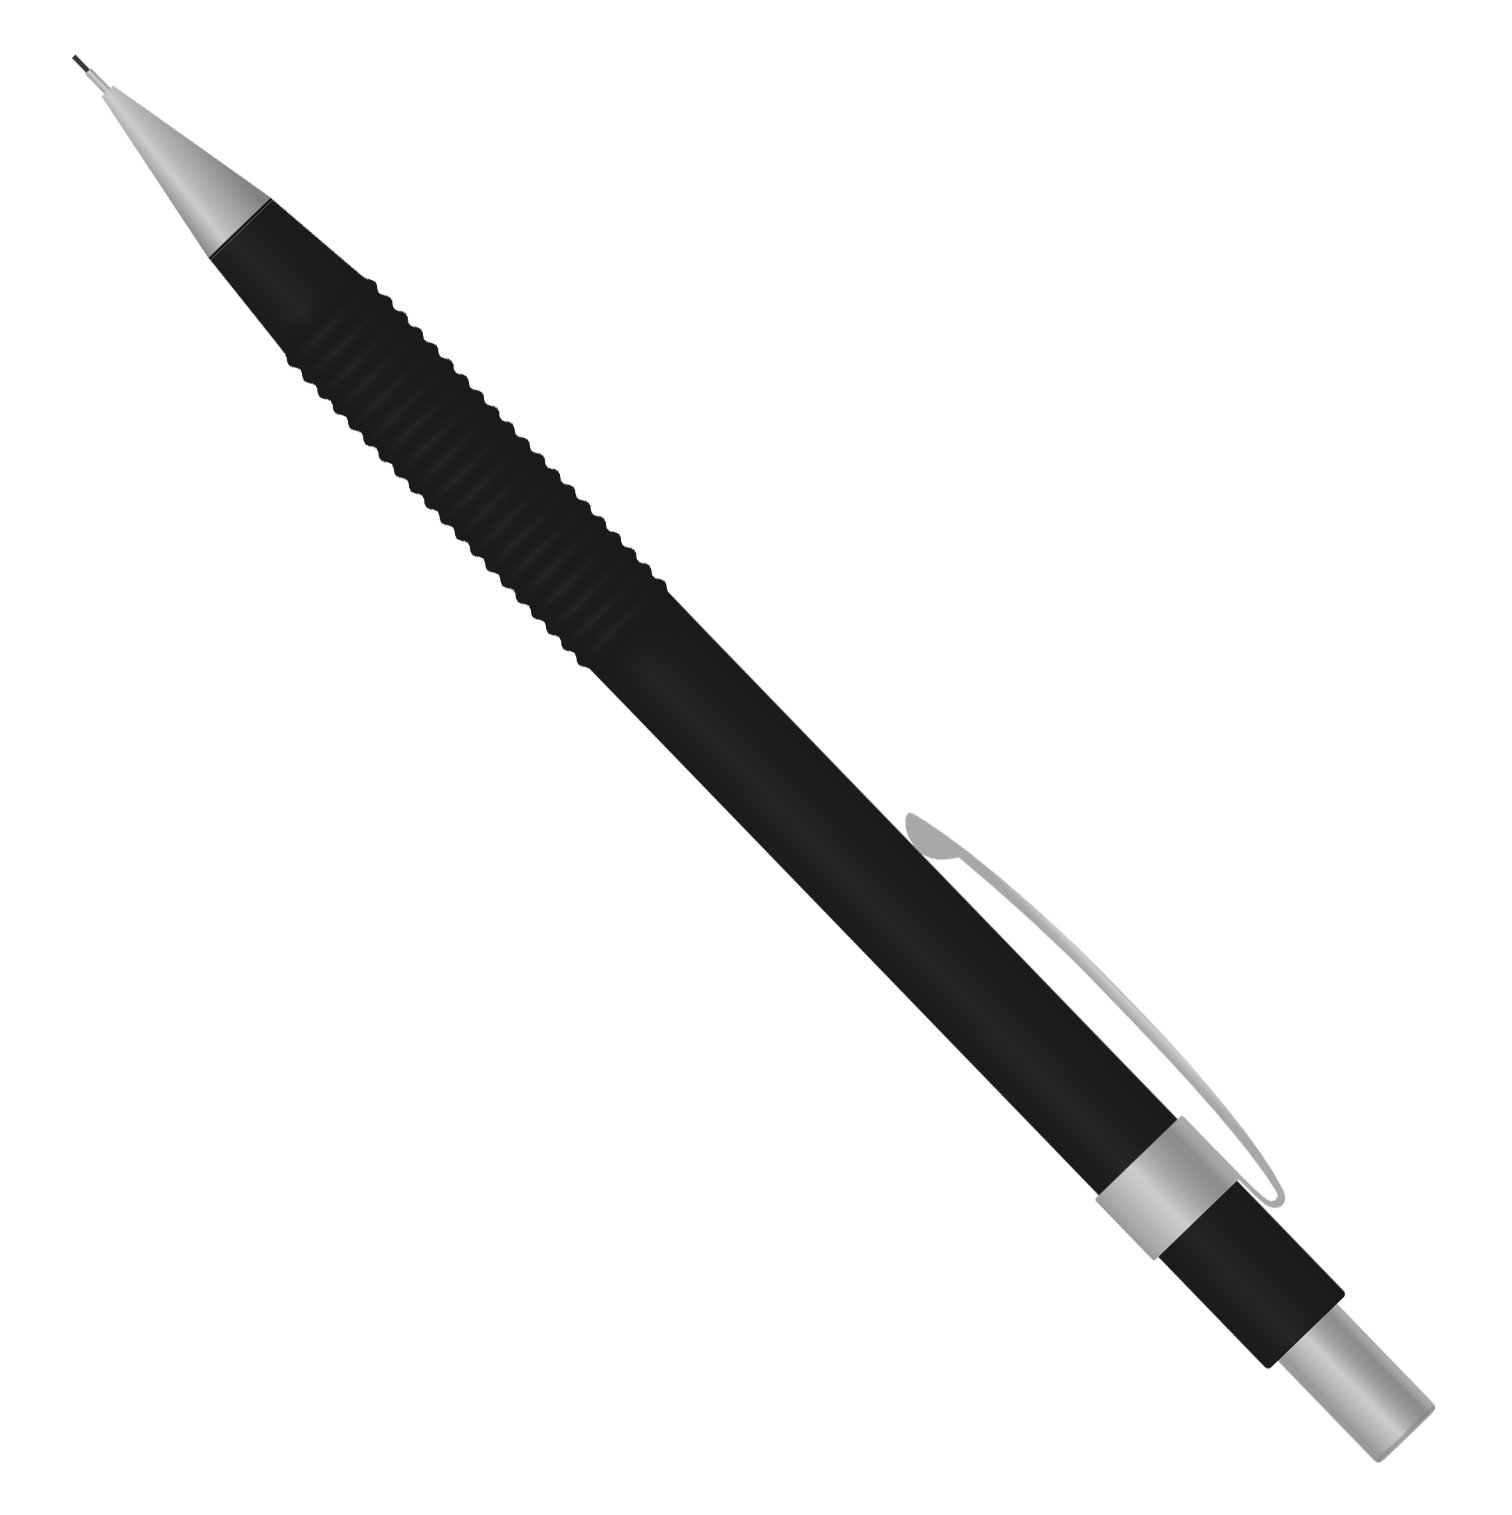 pencil clipart vector